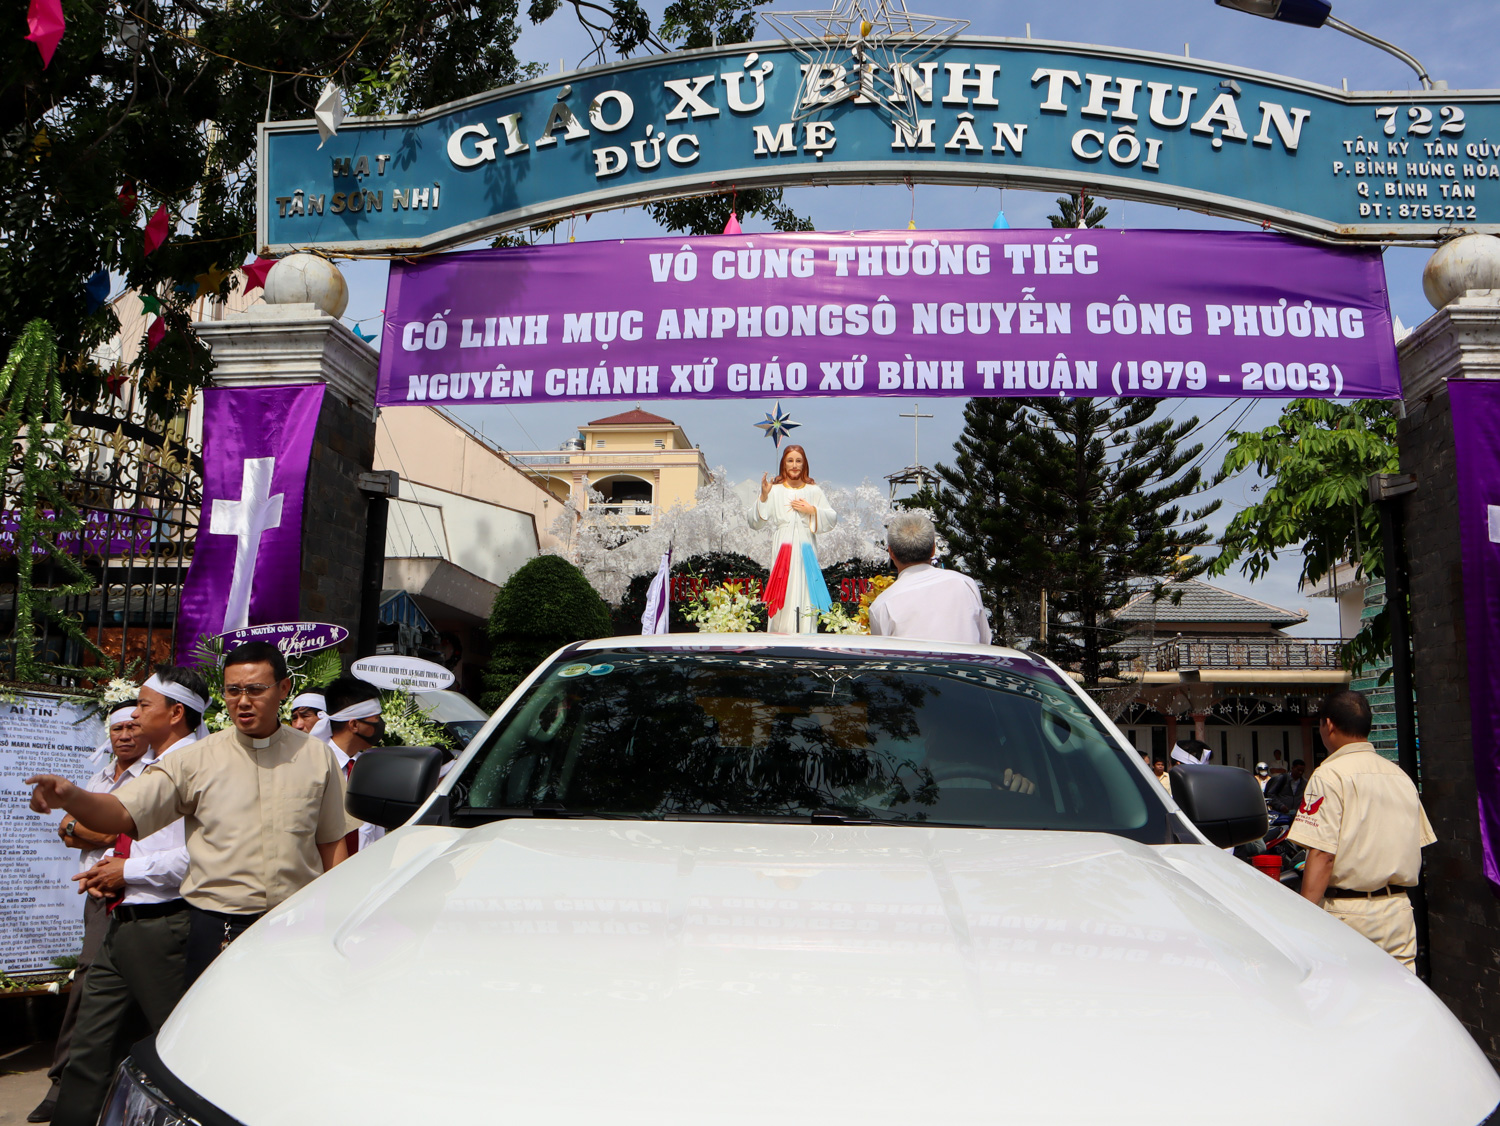 TGP.Sài Gòn - Thánh lễ An táng Cha cố Anphongsô - nguyên Chánh xứ Bình Thuận ngày 23-12-2020